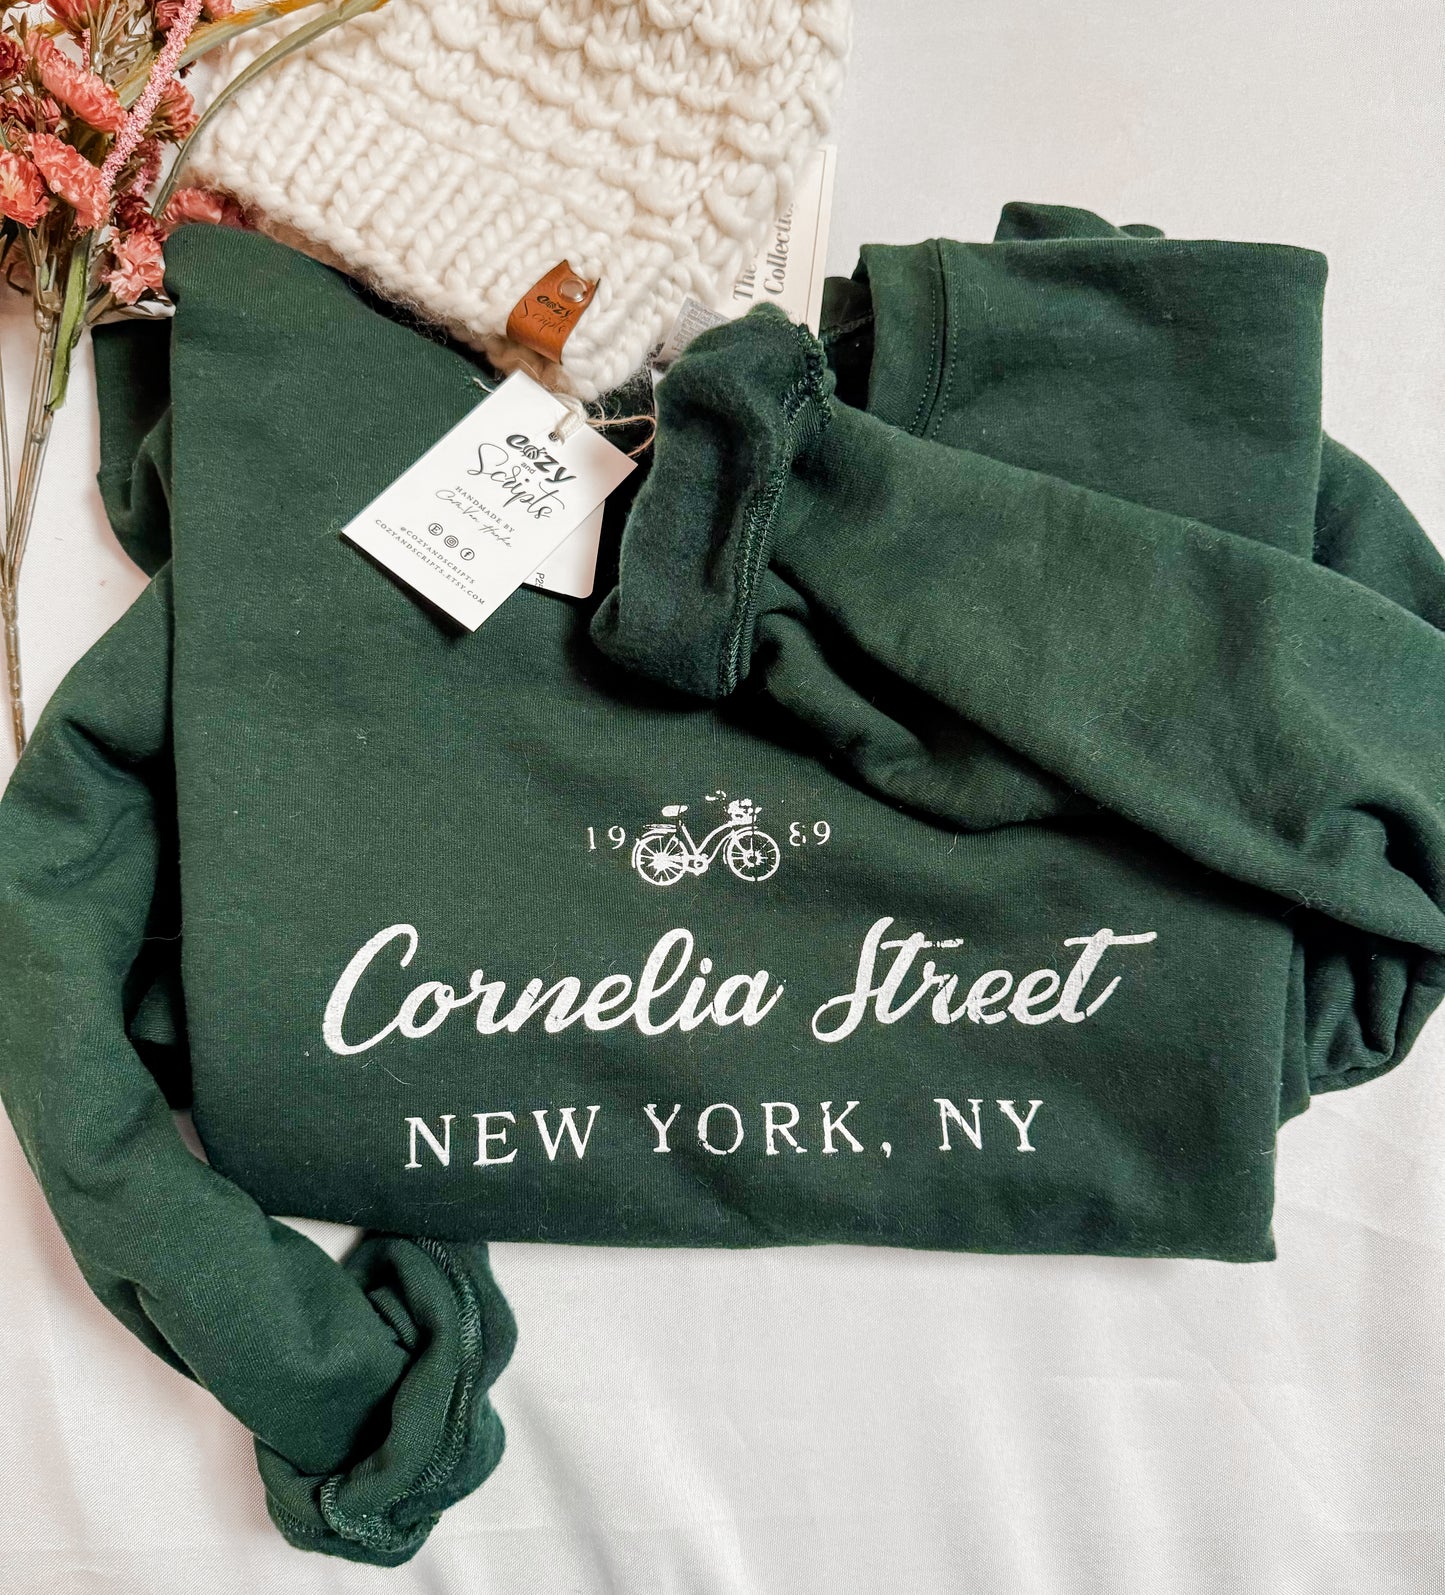 Cornelia street sweatshirt